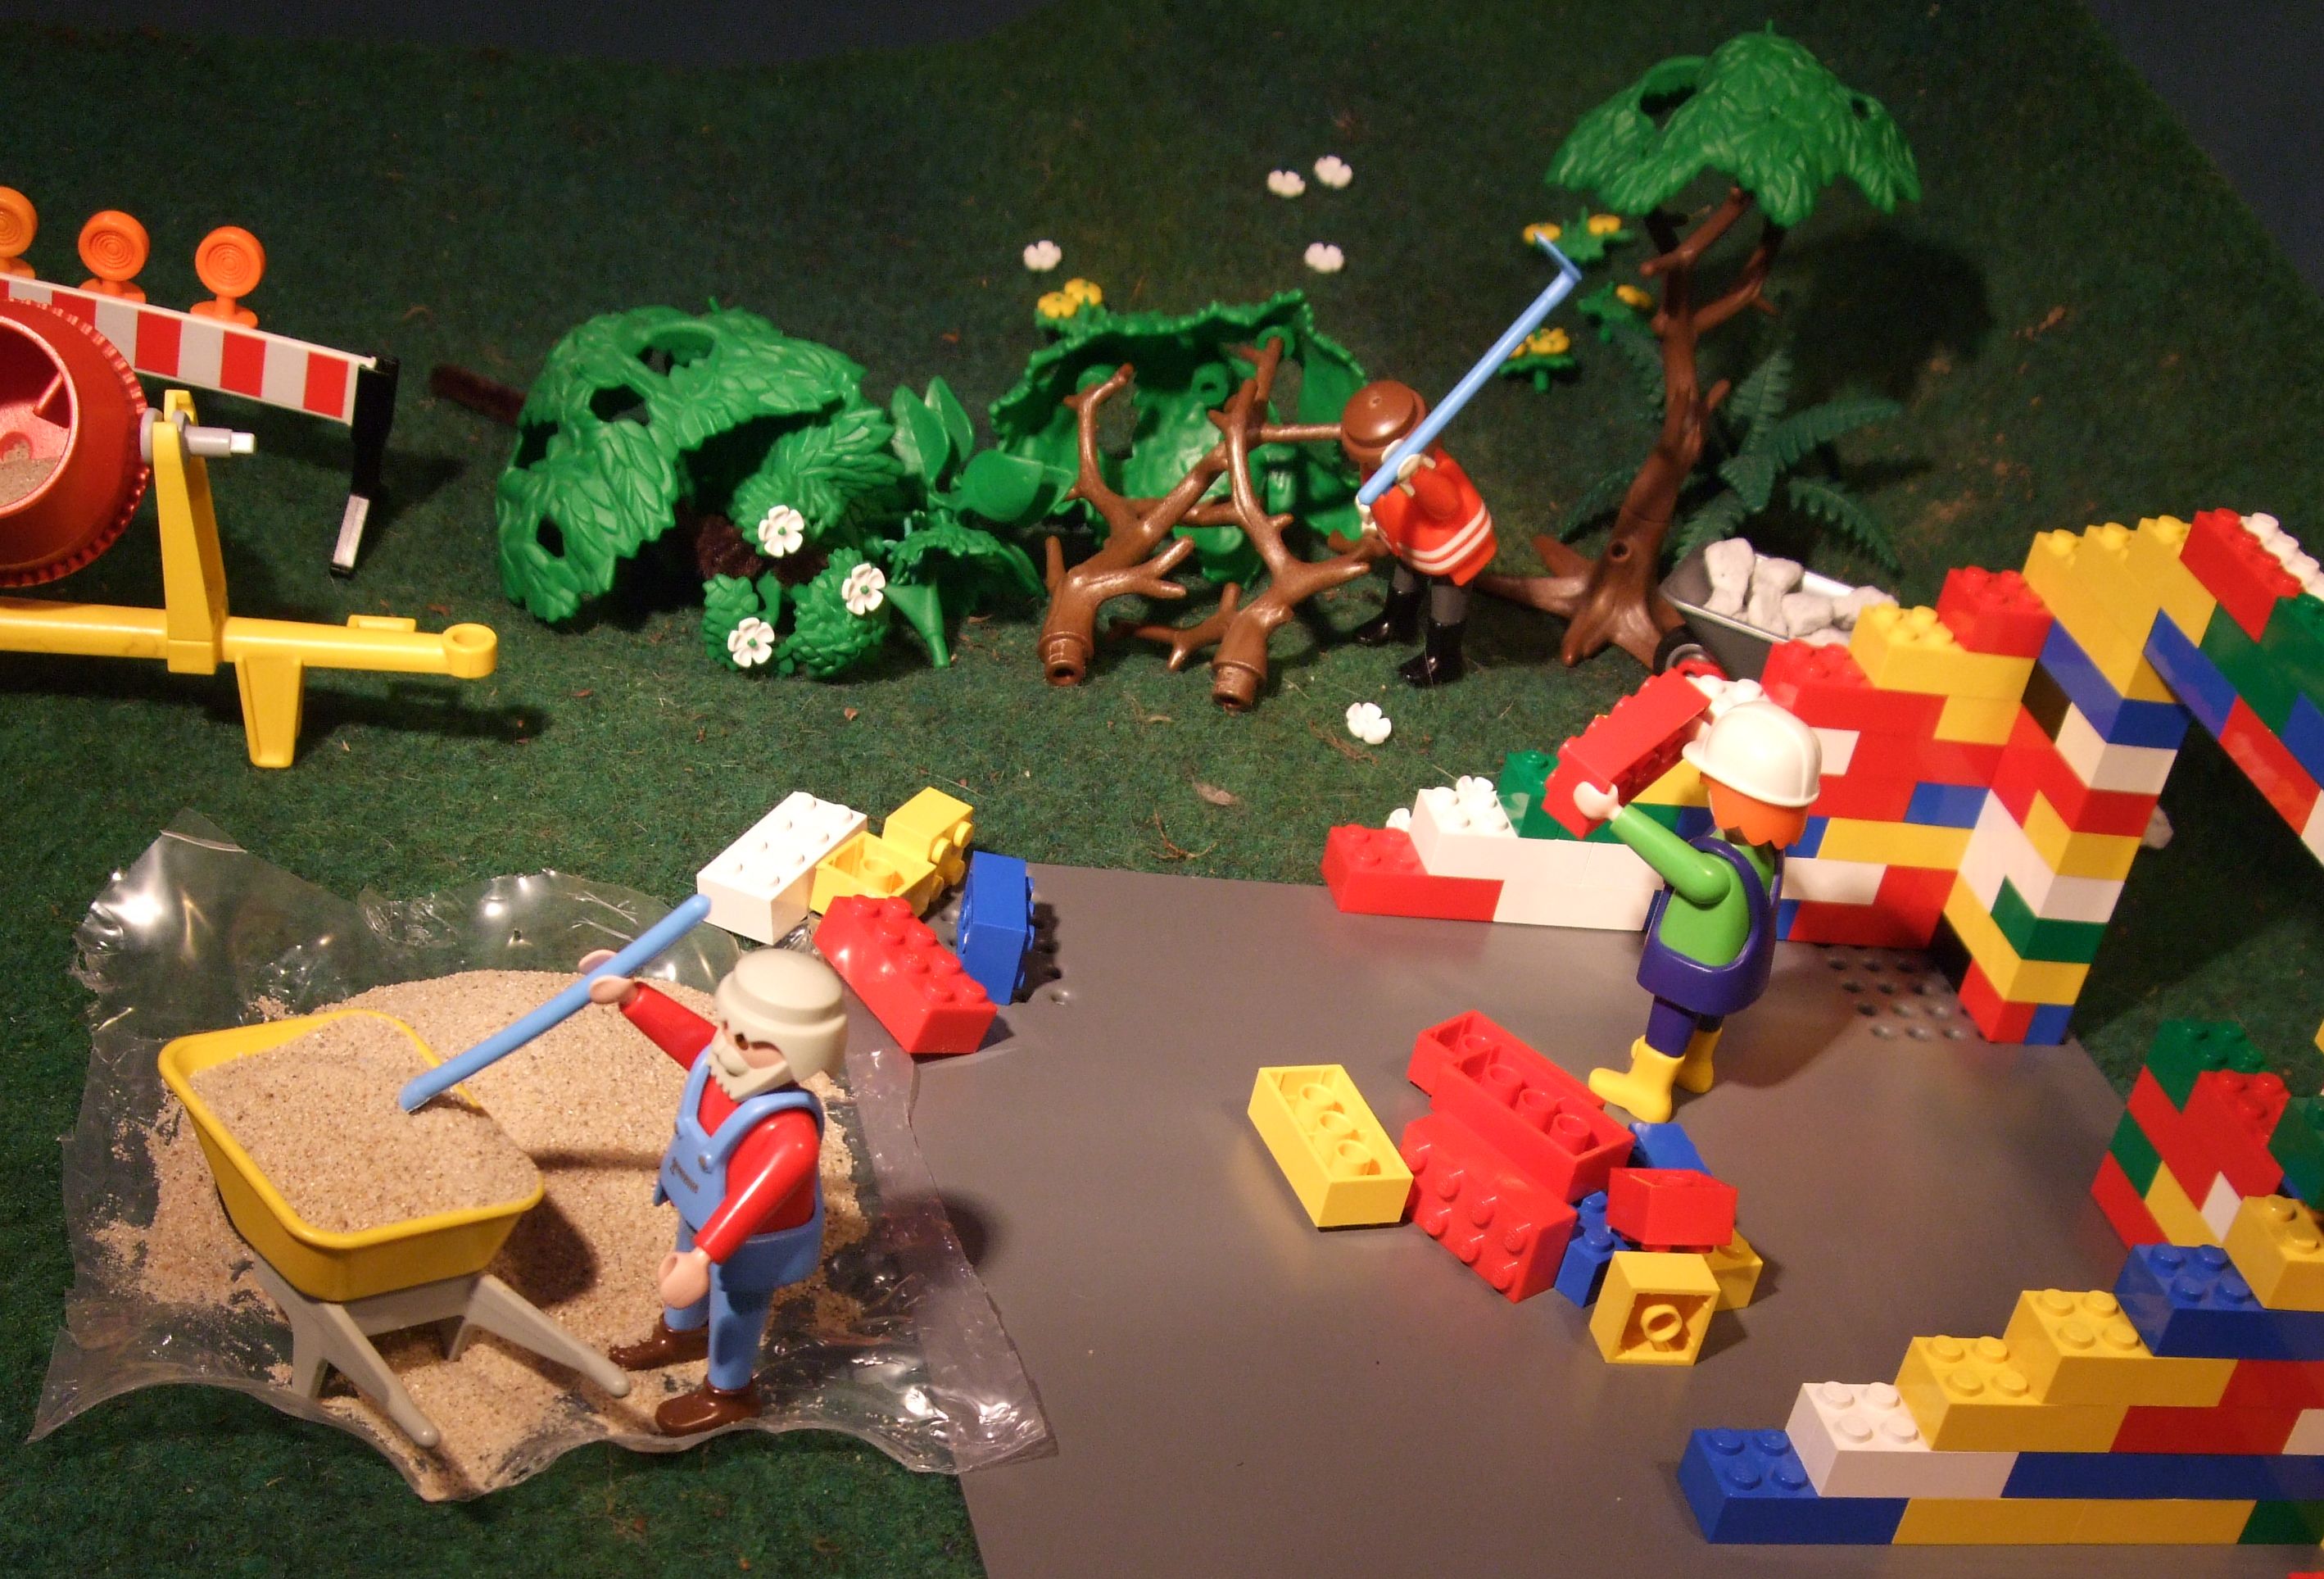 Mit Playmobilfiguren ist eine Baustelle nachgestellt worden. Zu sehen ist links ein Männchen mit Schubkarre, welches Sand schaufelt. Rechts gibt es ein angefangens Legohaus, wo ein Männchen einen Bauklotz in den Händen hält und im hingeren Teil zerkleinert ein Männchen liegende Bäume. Eine Betonmischmaschine ist hinten links auch noch zu sehen.